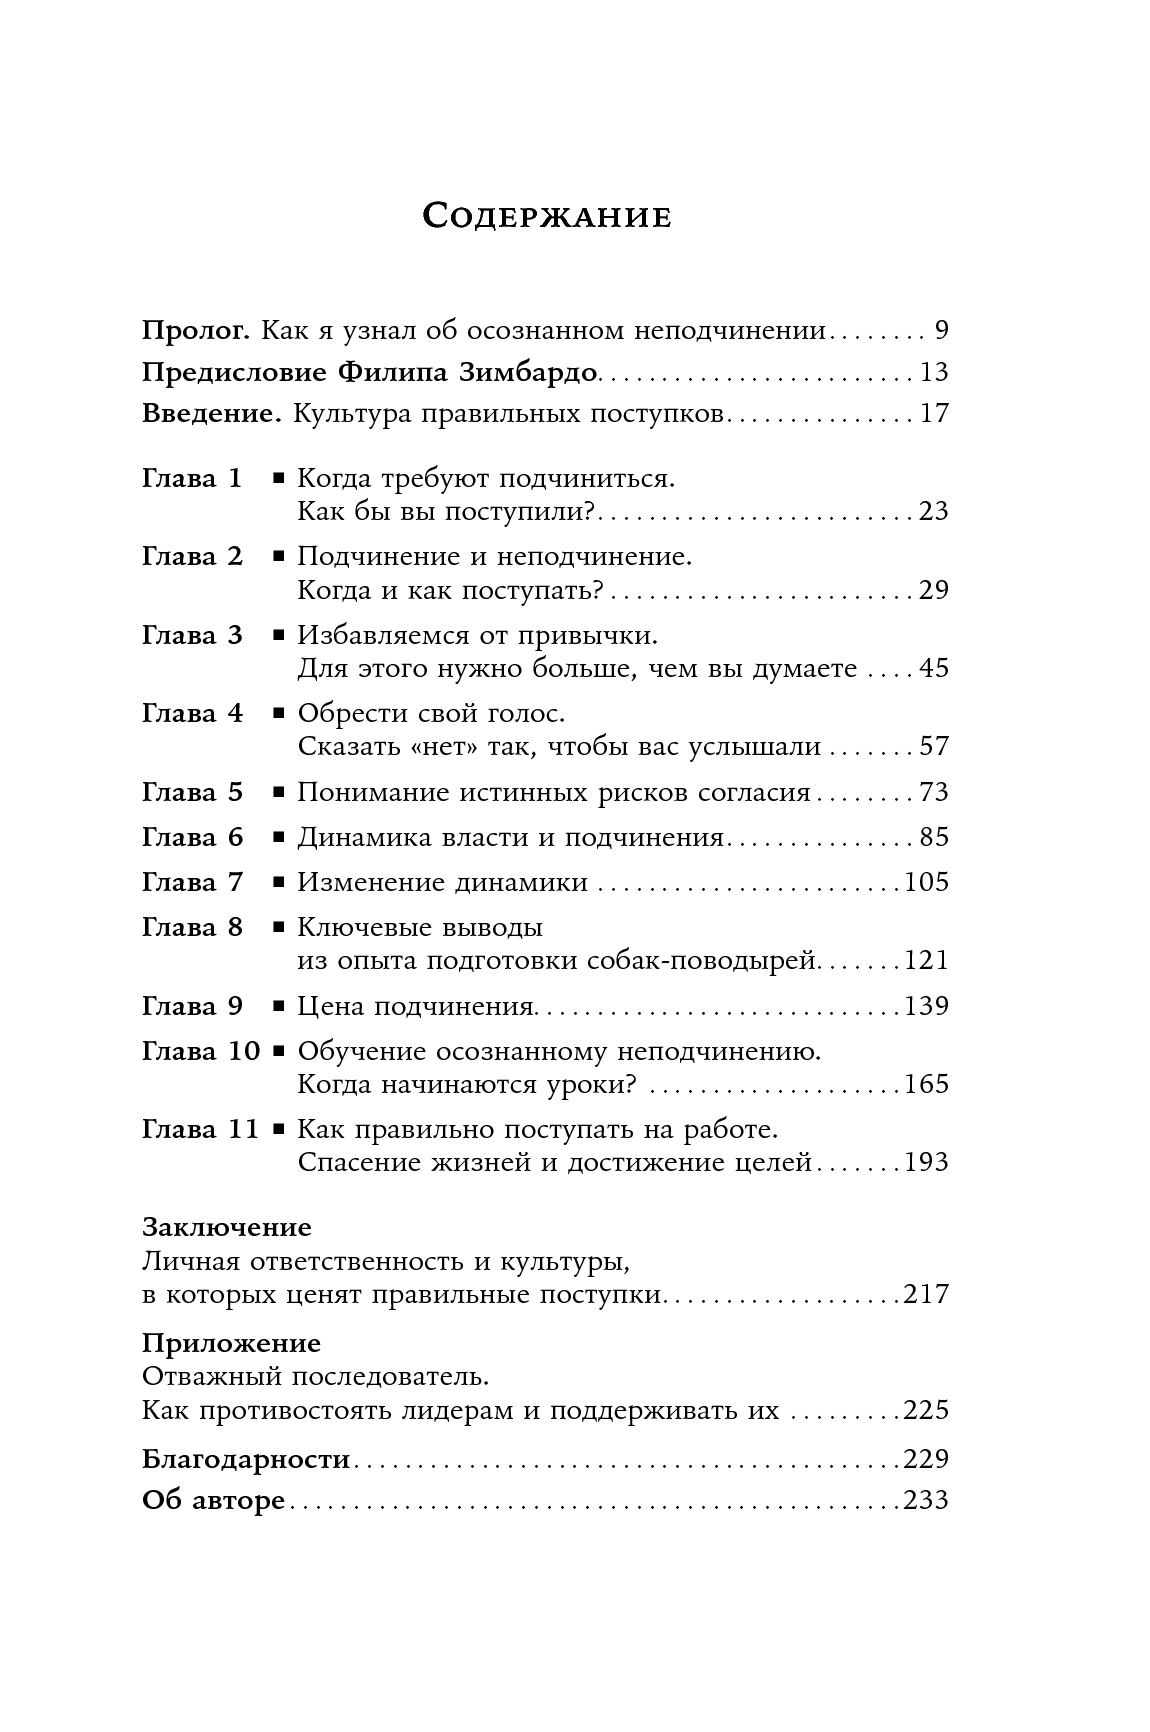 Как реагировать на хамство - особенности и рекомендации психолога - psychbook.ru